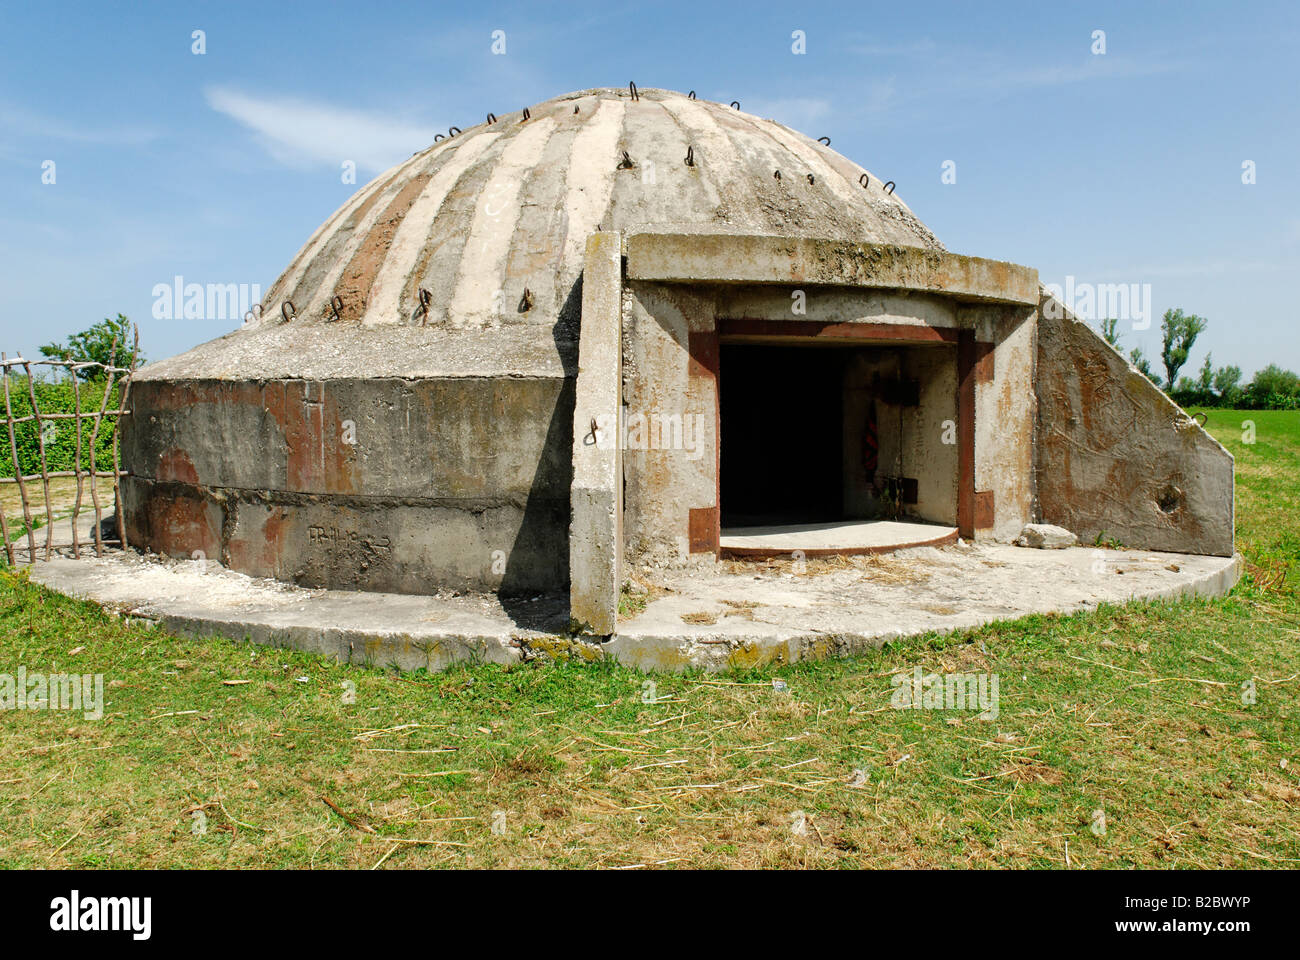 Typische albanische Bunker, ein Rest der kommunistischen Zeiten, Albanien, Europa Stockfoto